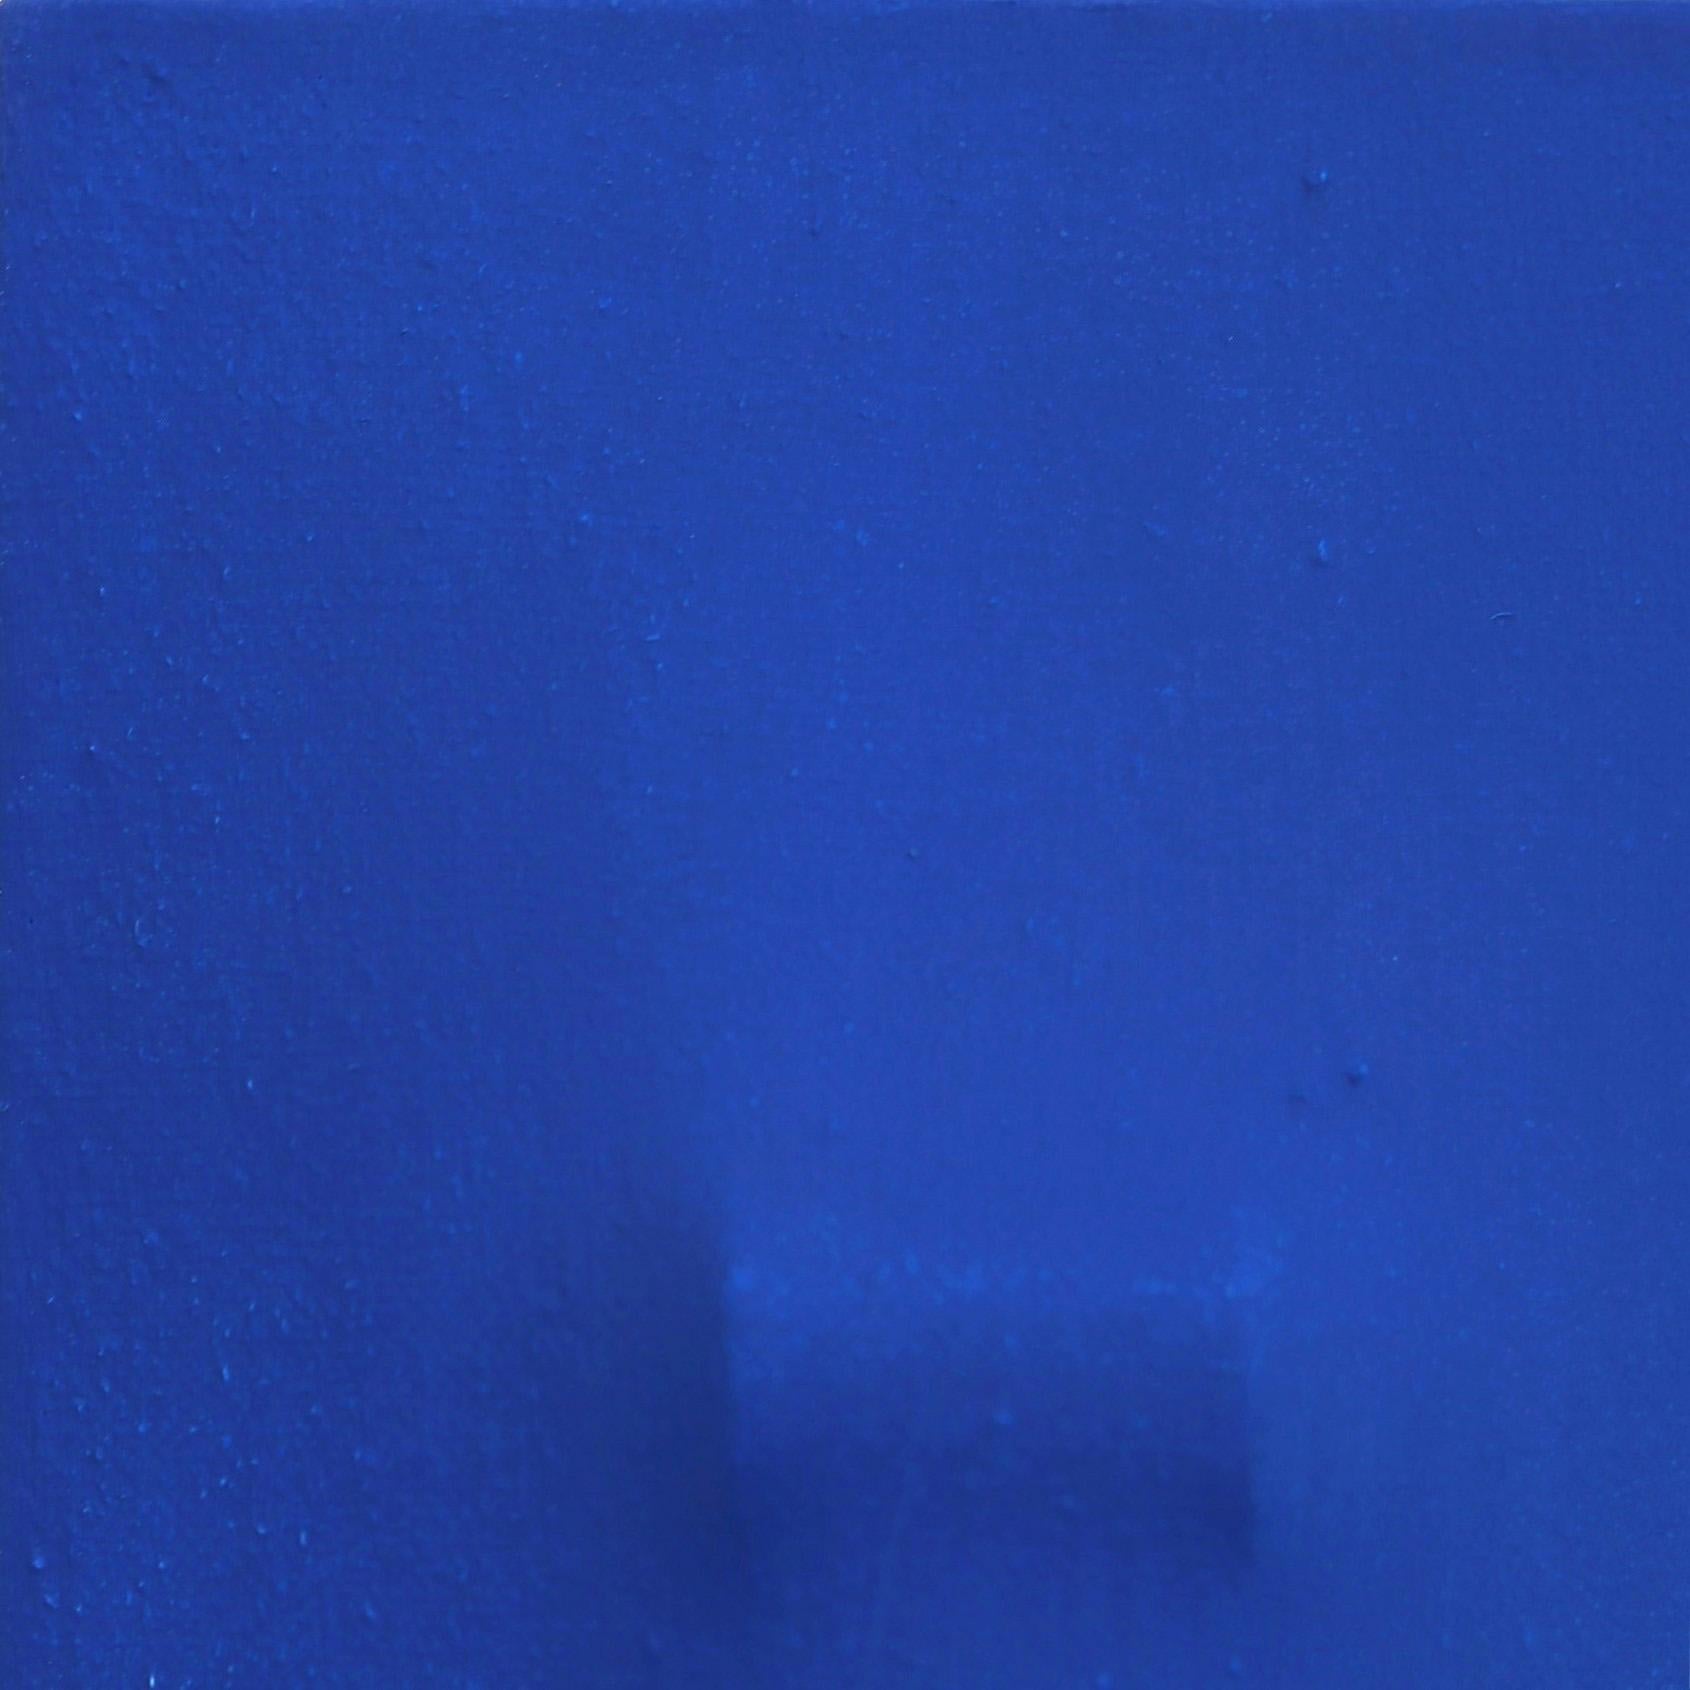 Slims CNB – Dreidimensionales, minimalistisches, abstraktes Wandgemälde in Blau (Post-Minimalismus), Painting, von Len Klikunas